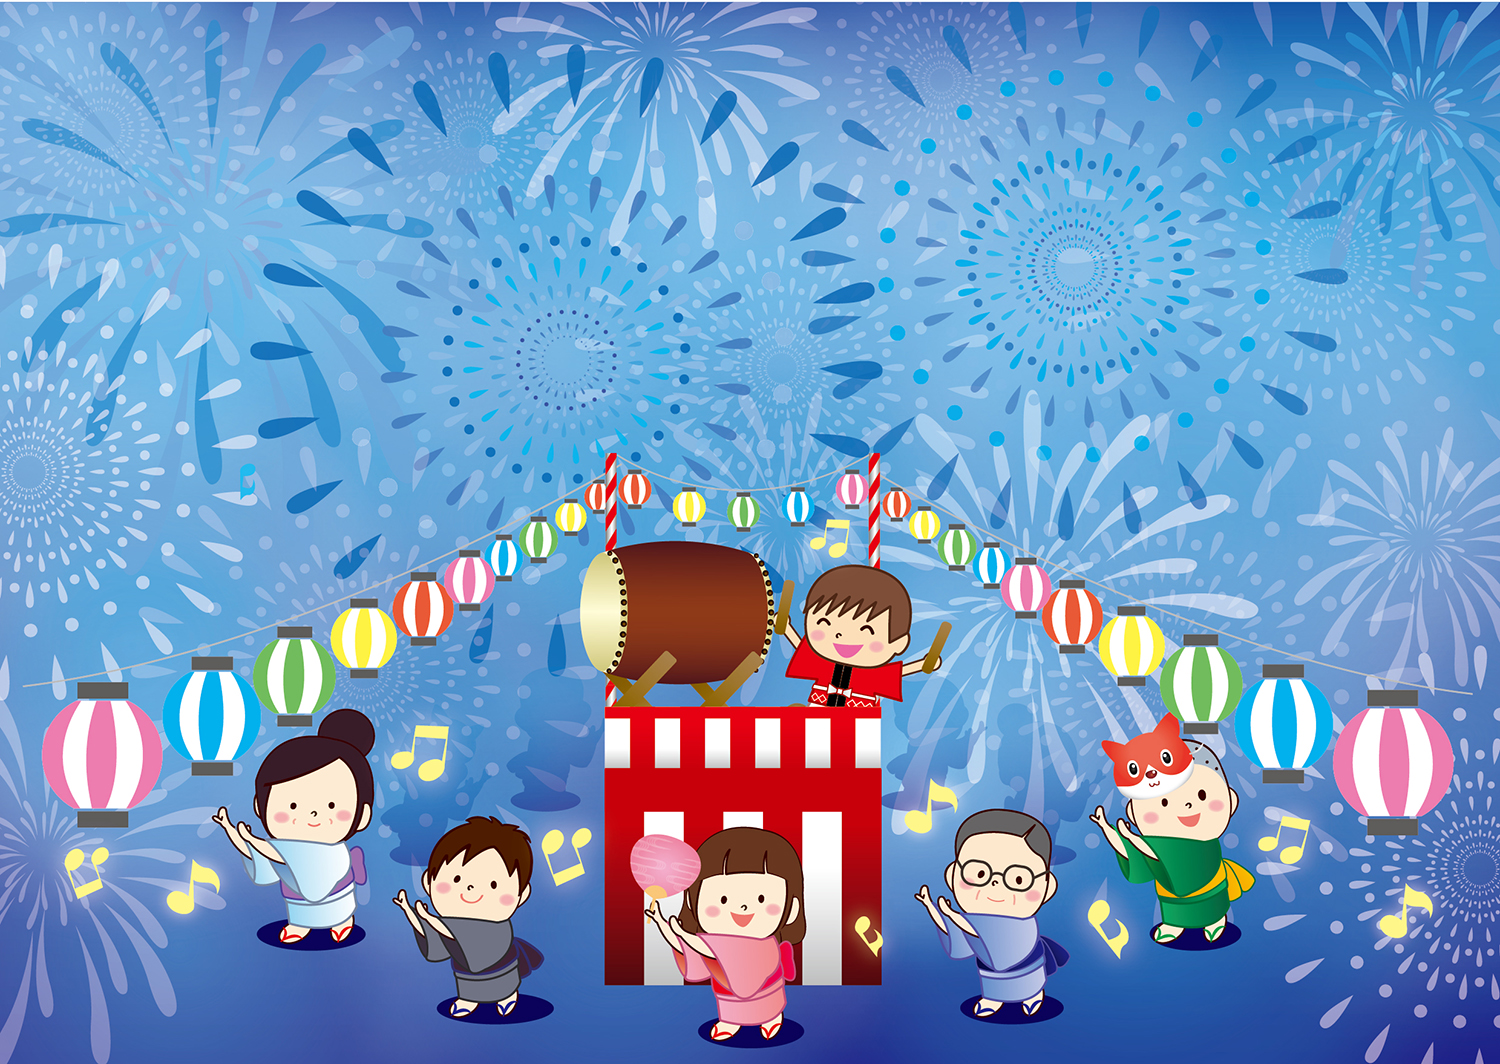 親子で楽しもう♪6月16日は滋賀県立大学にて大学祭「湖風夏祭」開催☆ゲーム・ステージ・模擬店に花火など♪